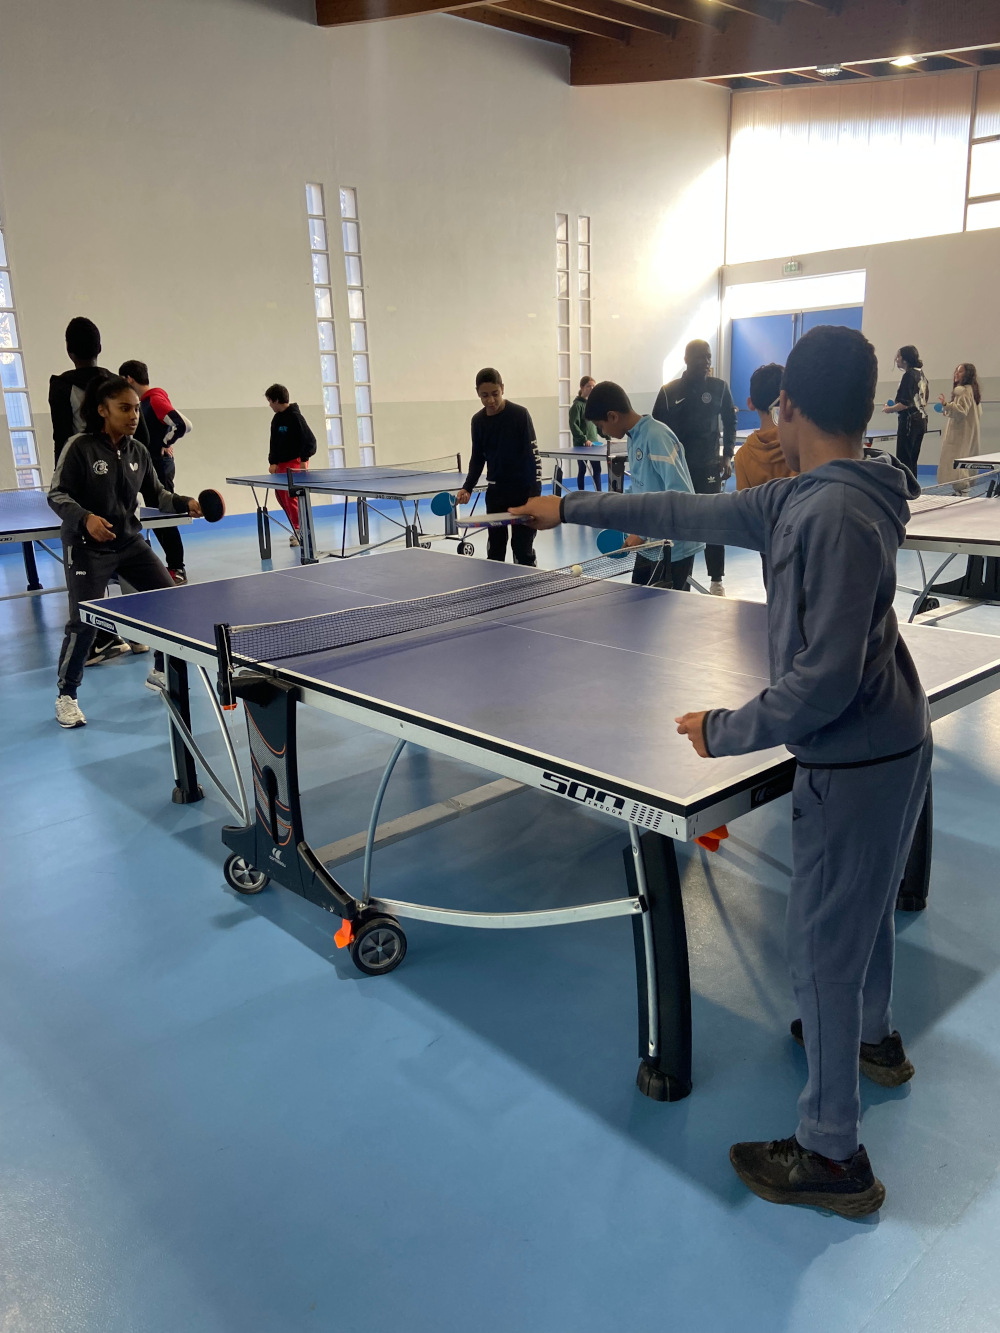 Des enfants jouent au tennisde table - Hope Media Solidaire